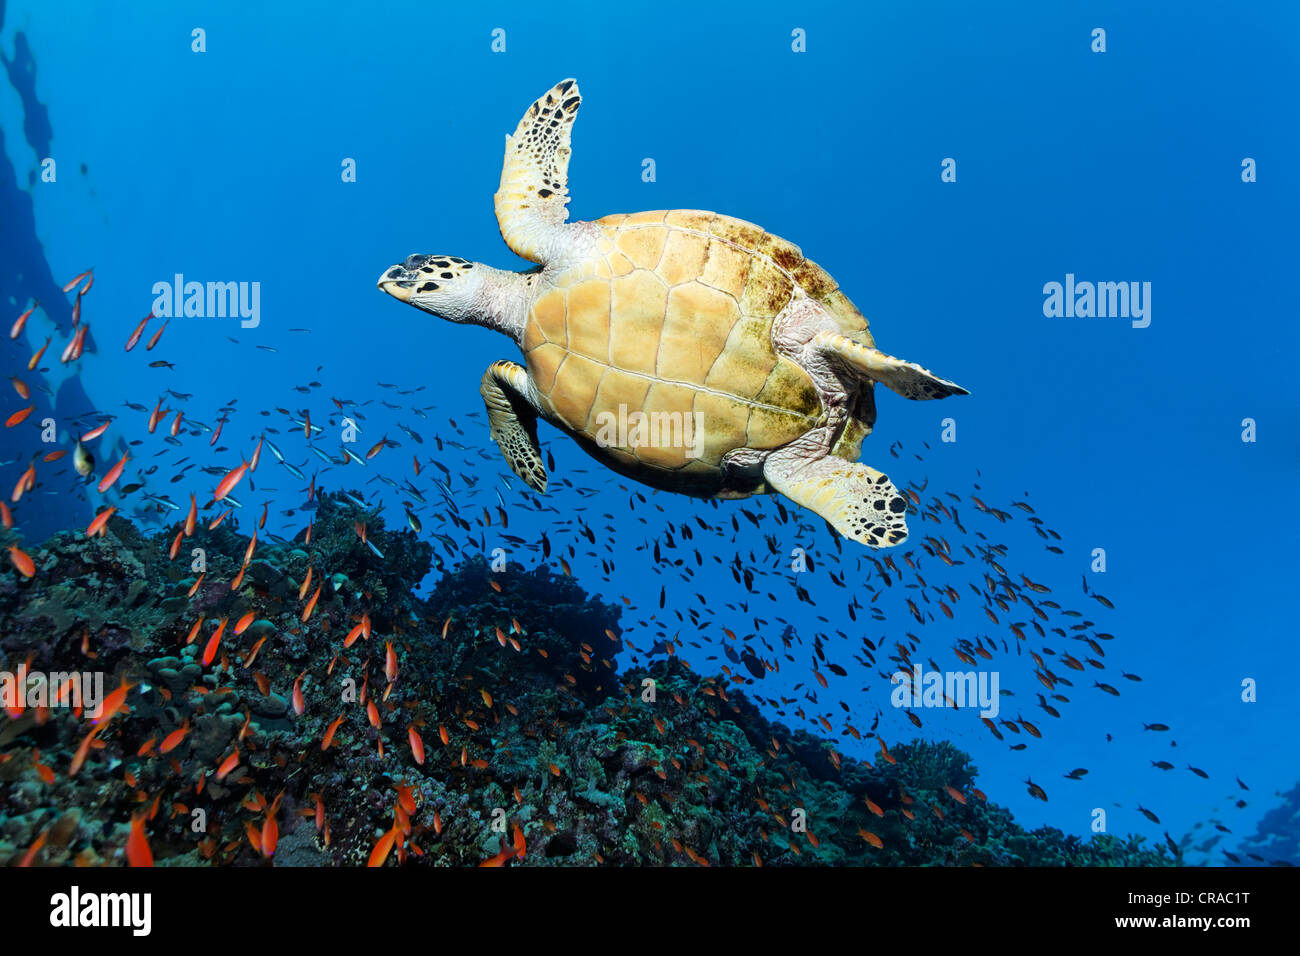 La tortue imbriquée (Eretmochelys imbricata) nager au-dessus d'une barrière de corail, vu du dessous, Sharp Sinead, Egypte, Mer Rouge, Afrique Banque D'Images